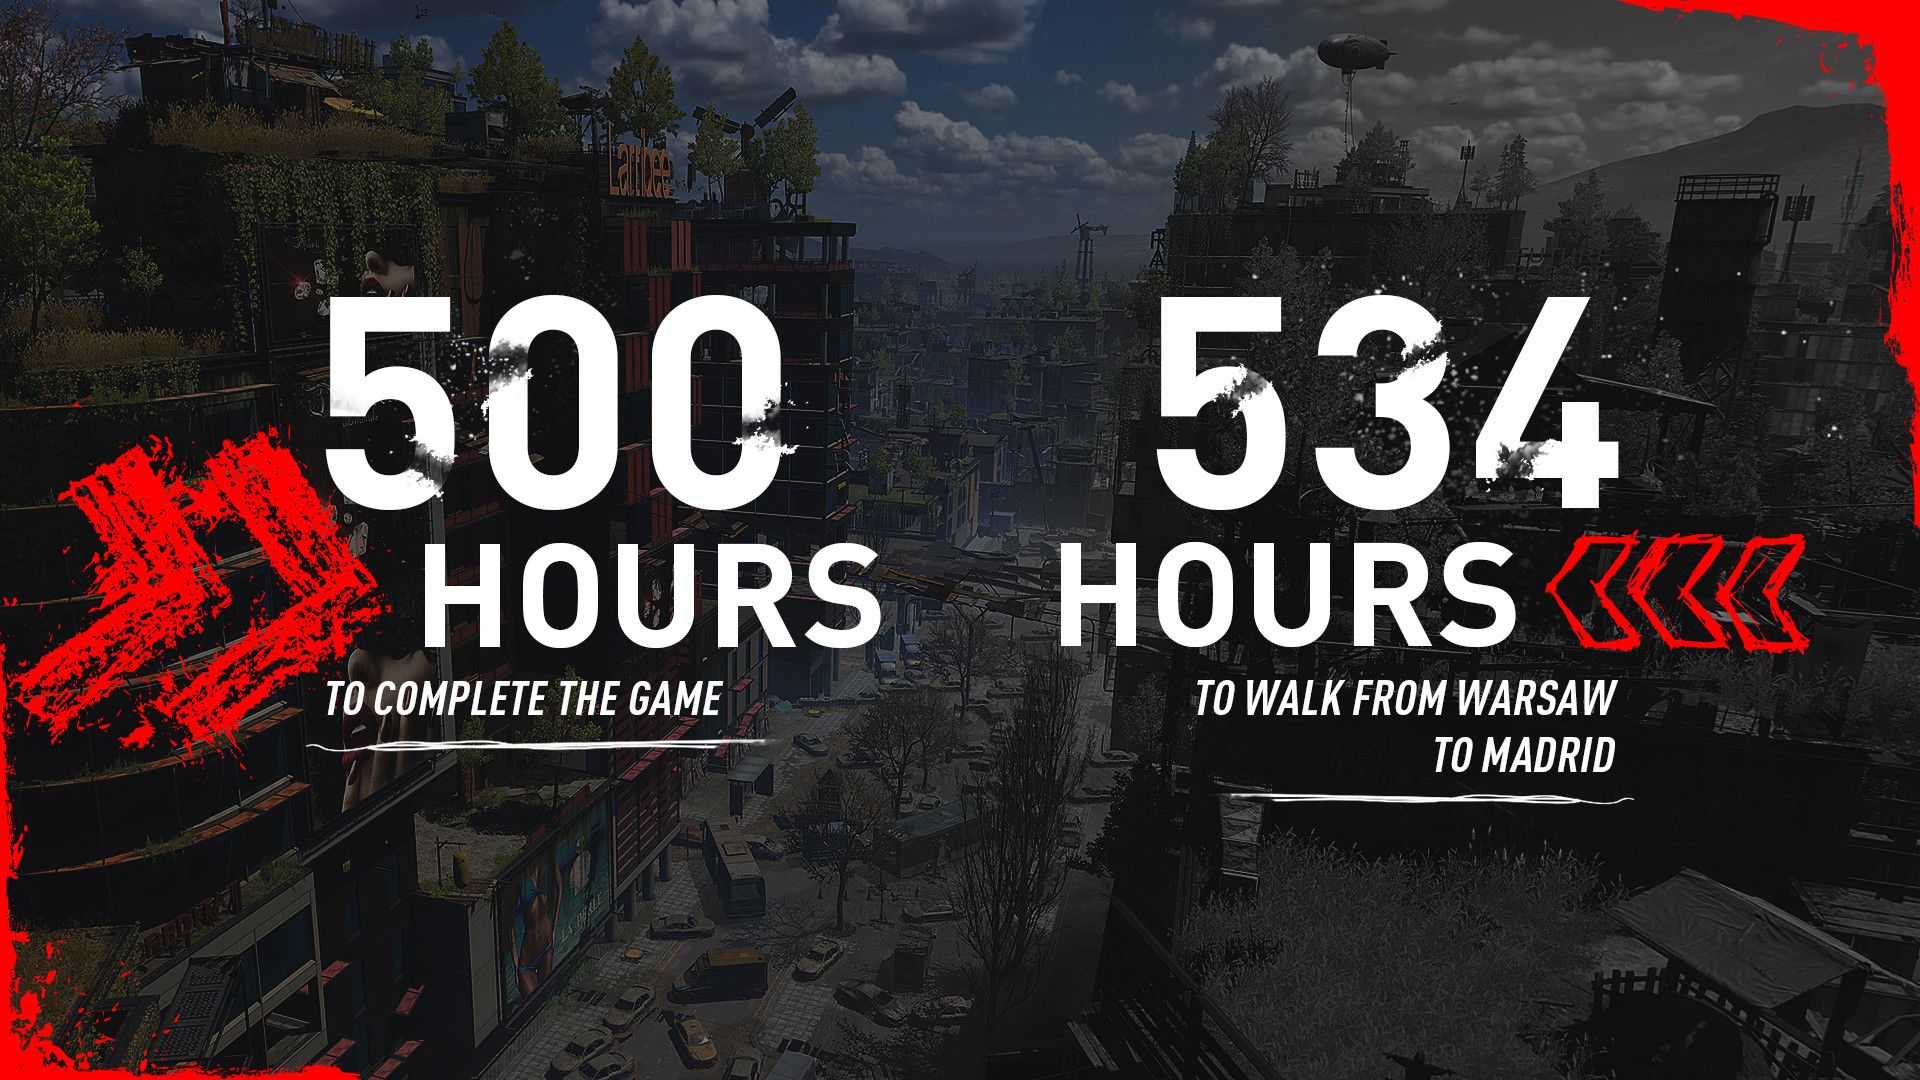 Полное прохождение Dying Light 2 займёт более 500 часов